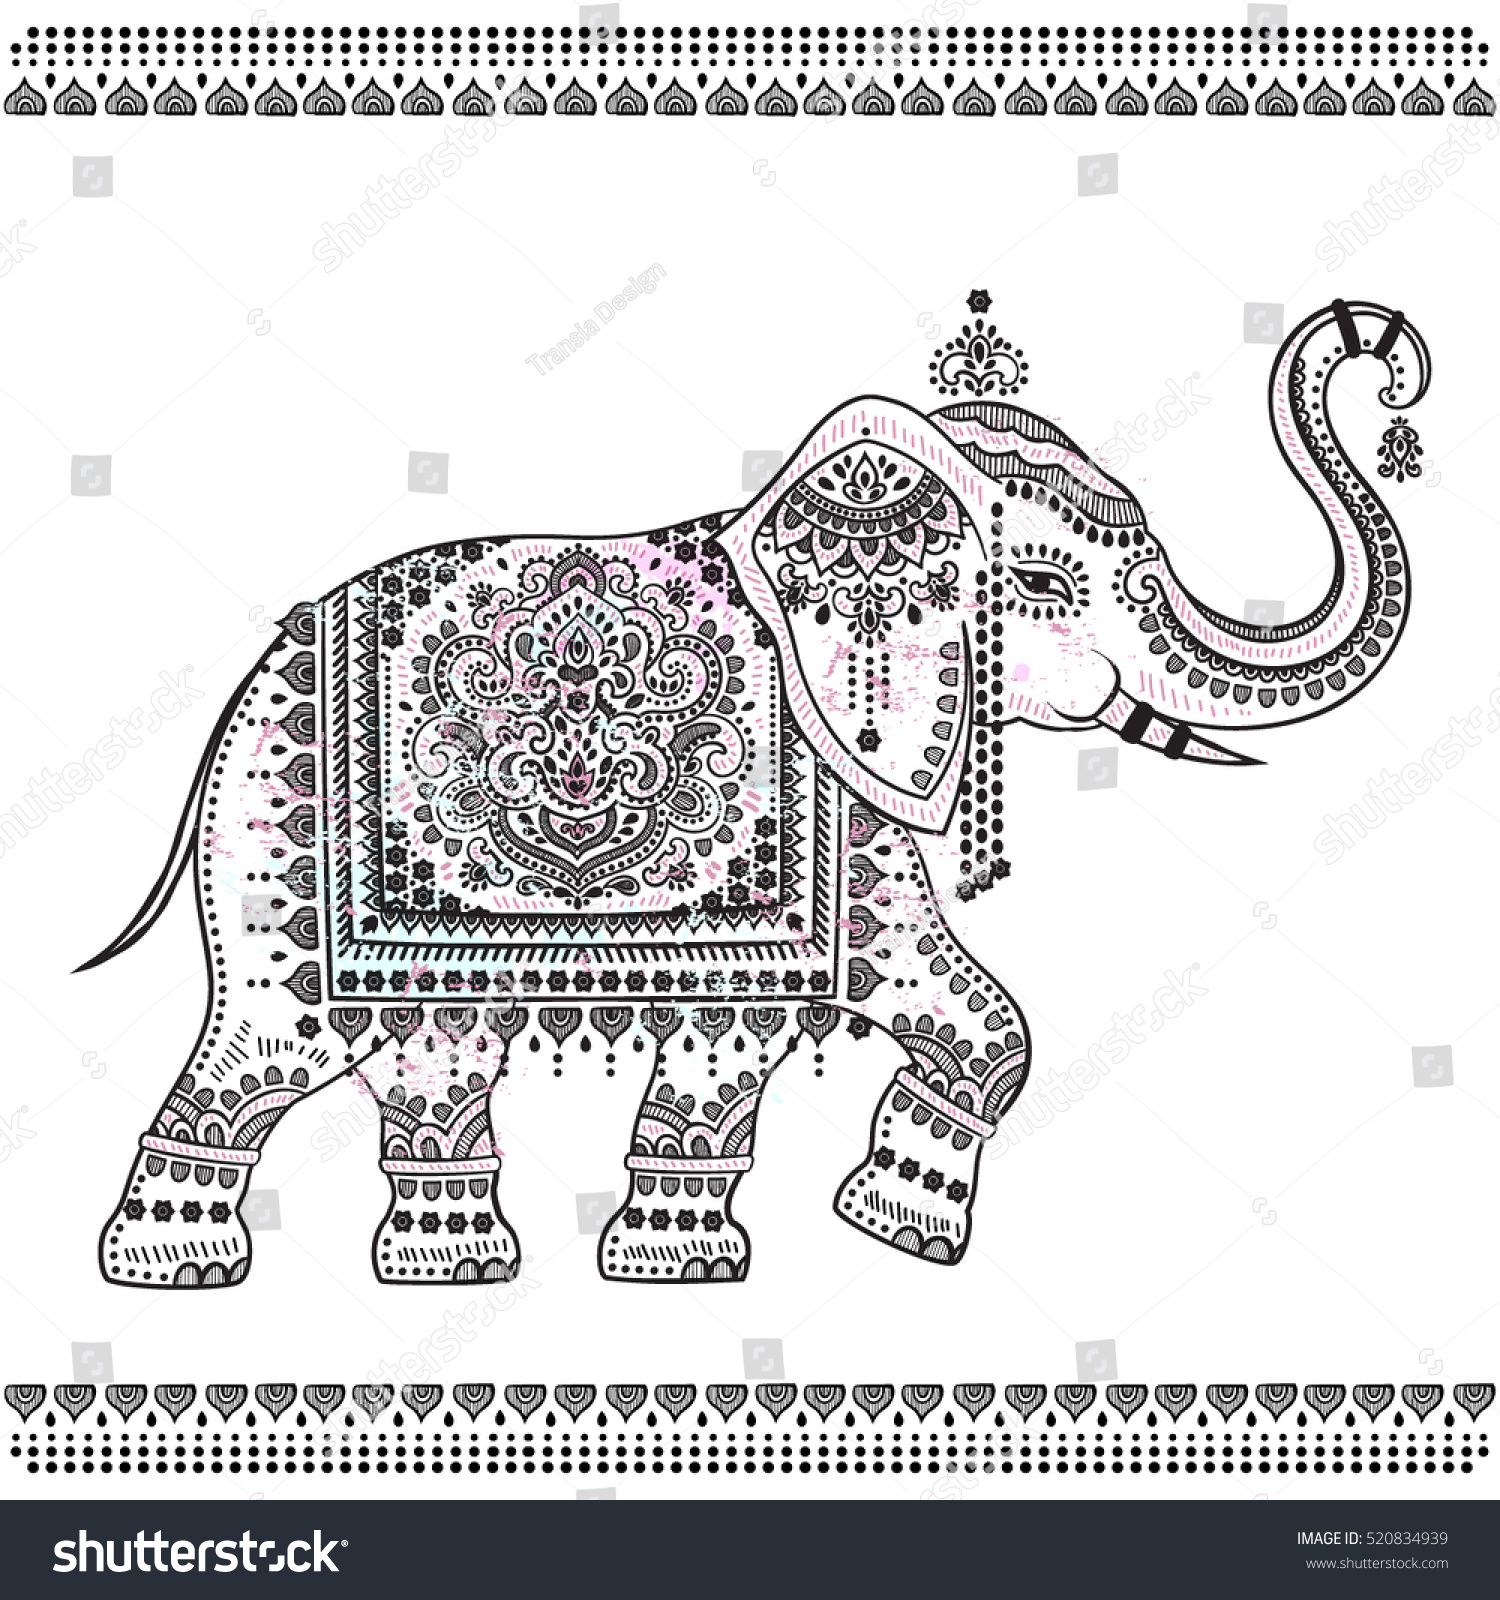 Орнамент для индийского покрывала для слона